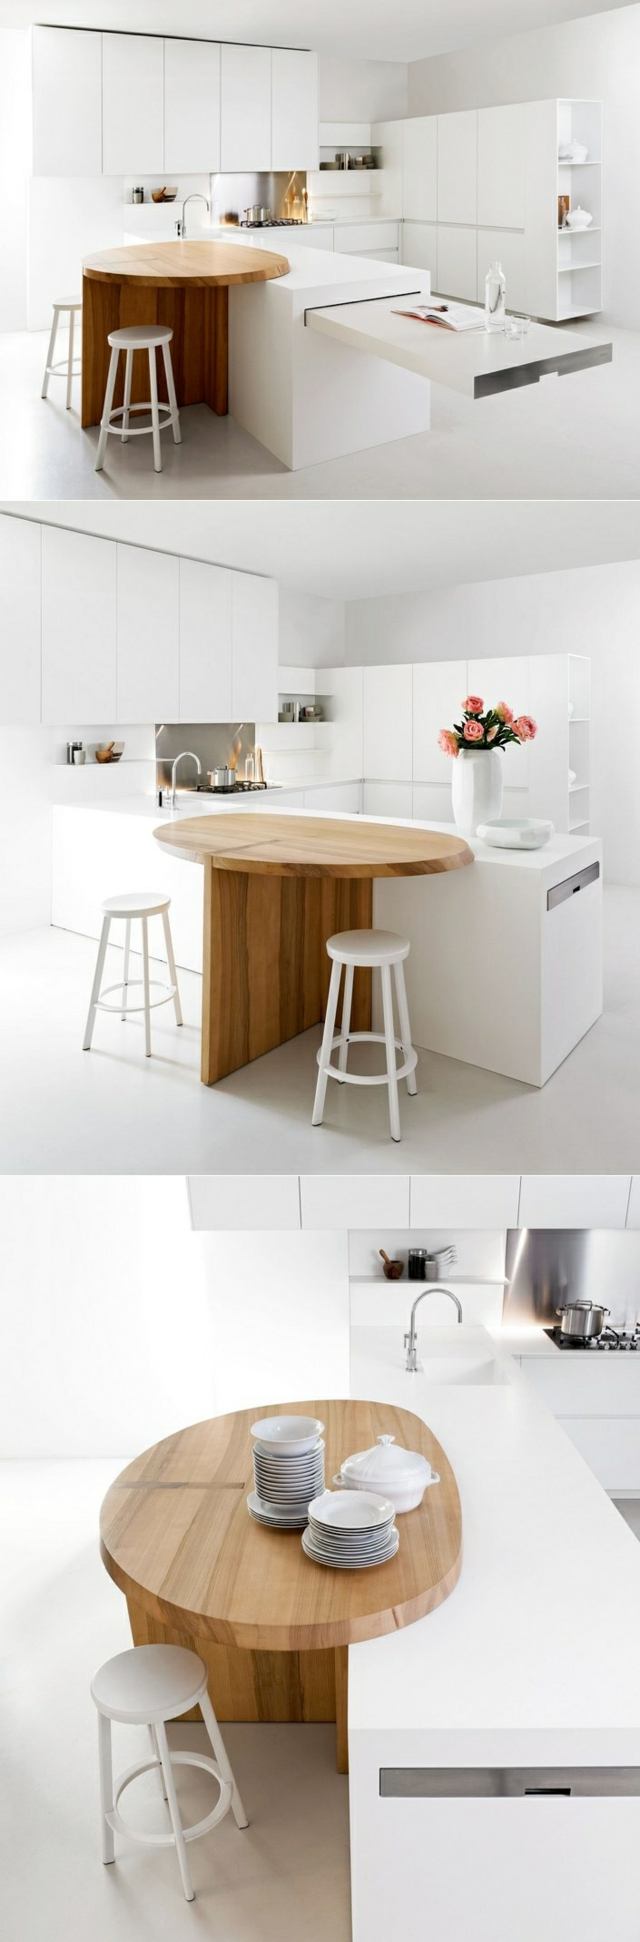 Køkken rund ø tæller hvid indrettet køkken moderne minimalistisk